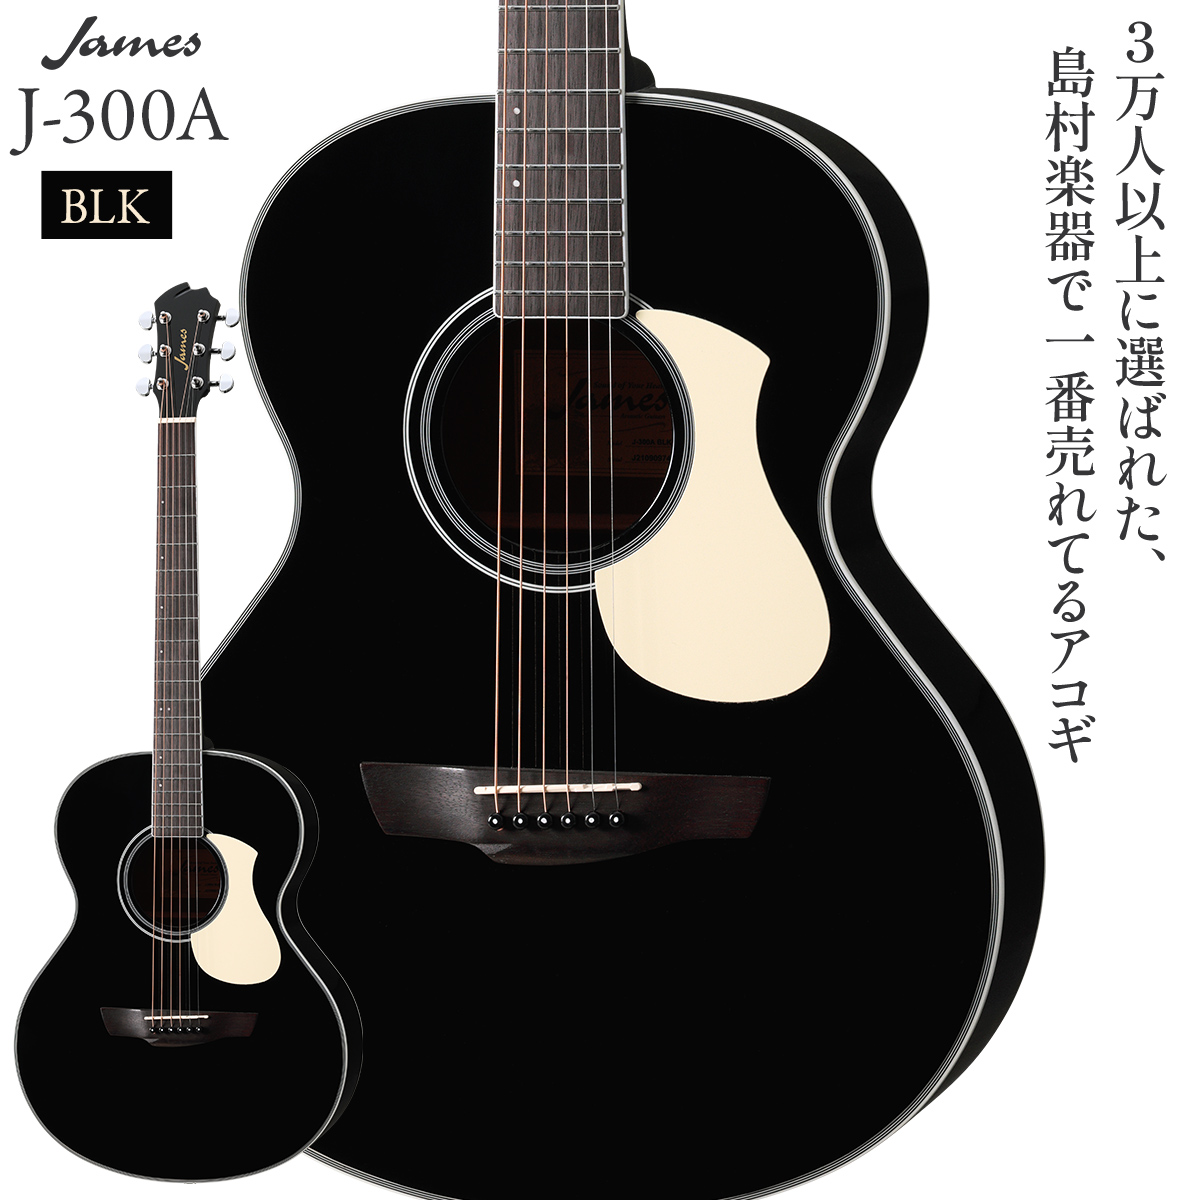 JAMES J-300A BLK アコースティックギターギター - omegasoft.co.id